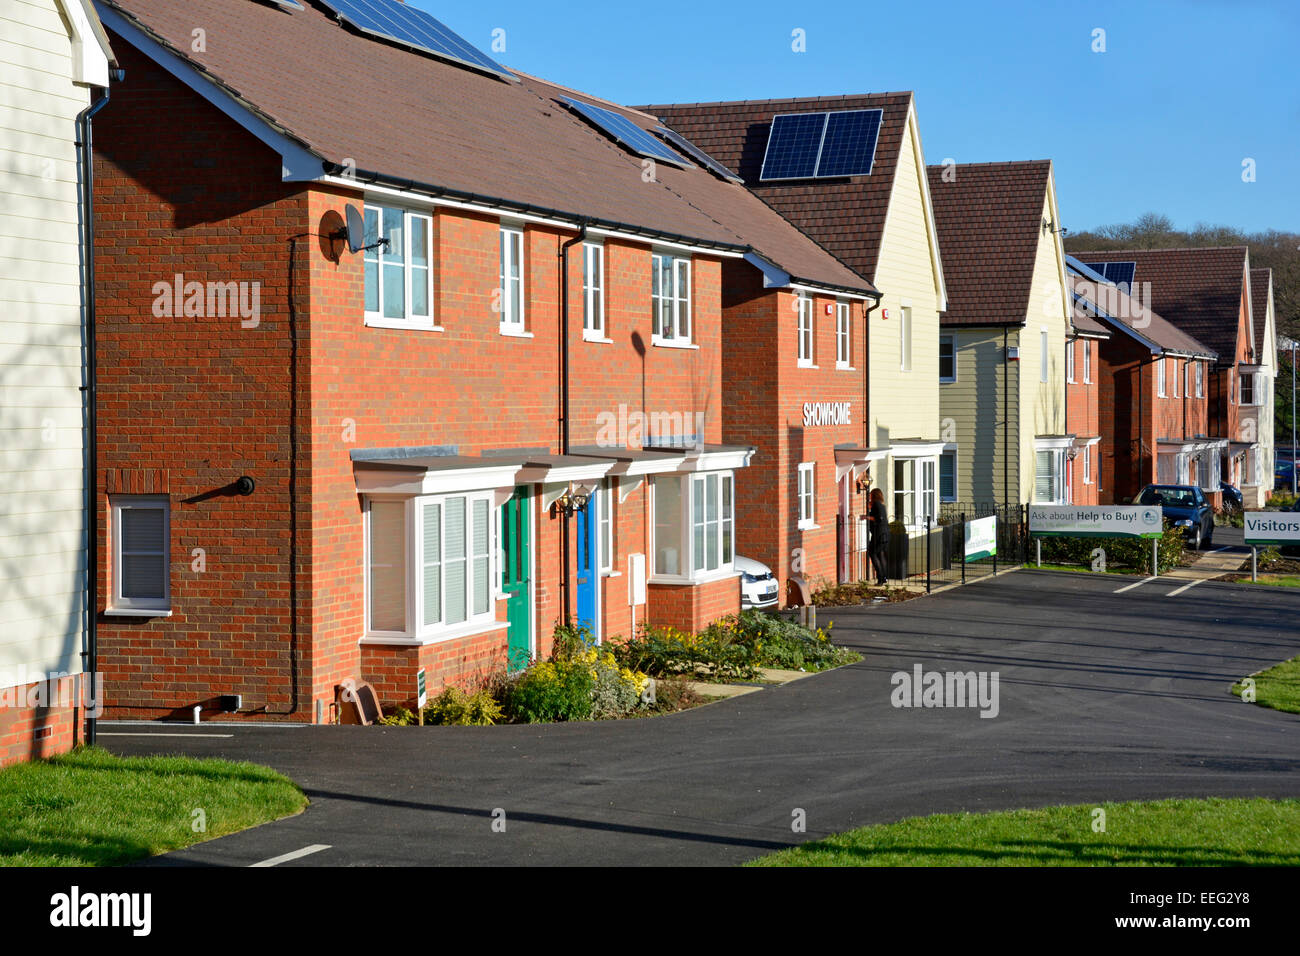 Un nouveau mélange de développement de logement peu occupé certaines vide nouveaux panneaux solaires installés comprend showhome Harold Hill Romford Londres Angleterre Royaume-uni Banque D'Images